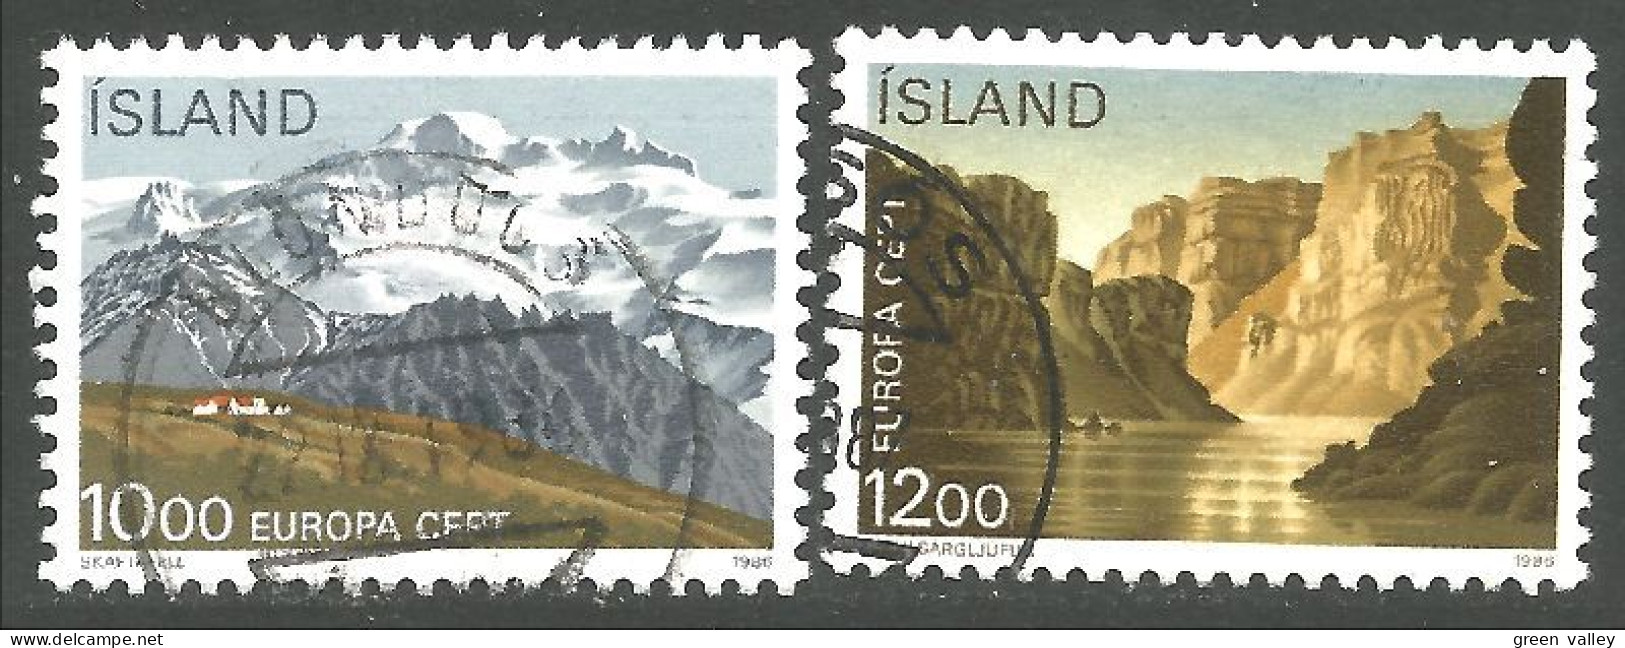 EU86-29 EUROPA CEPT 1986 Iceland National Parks - 1986